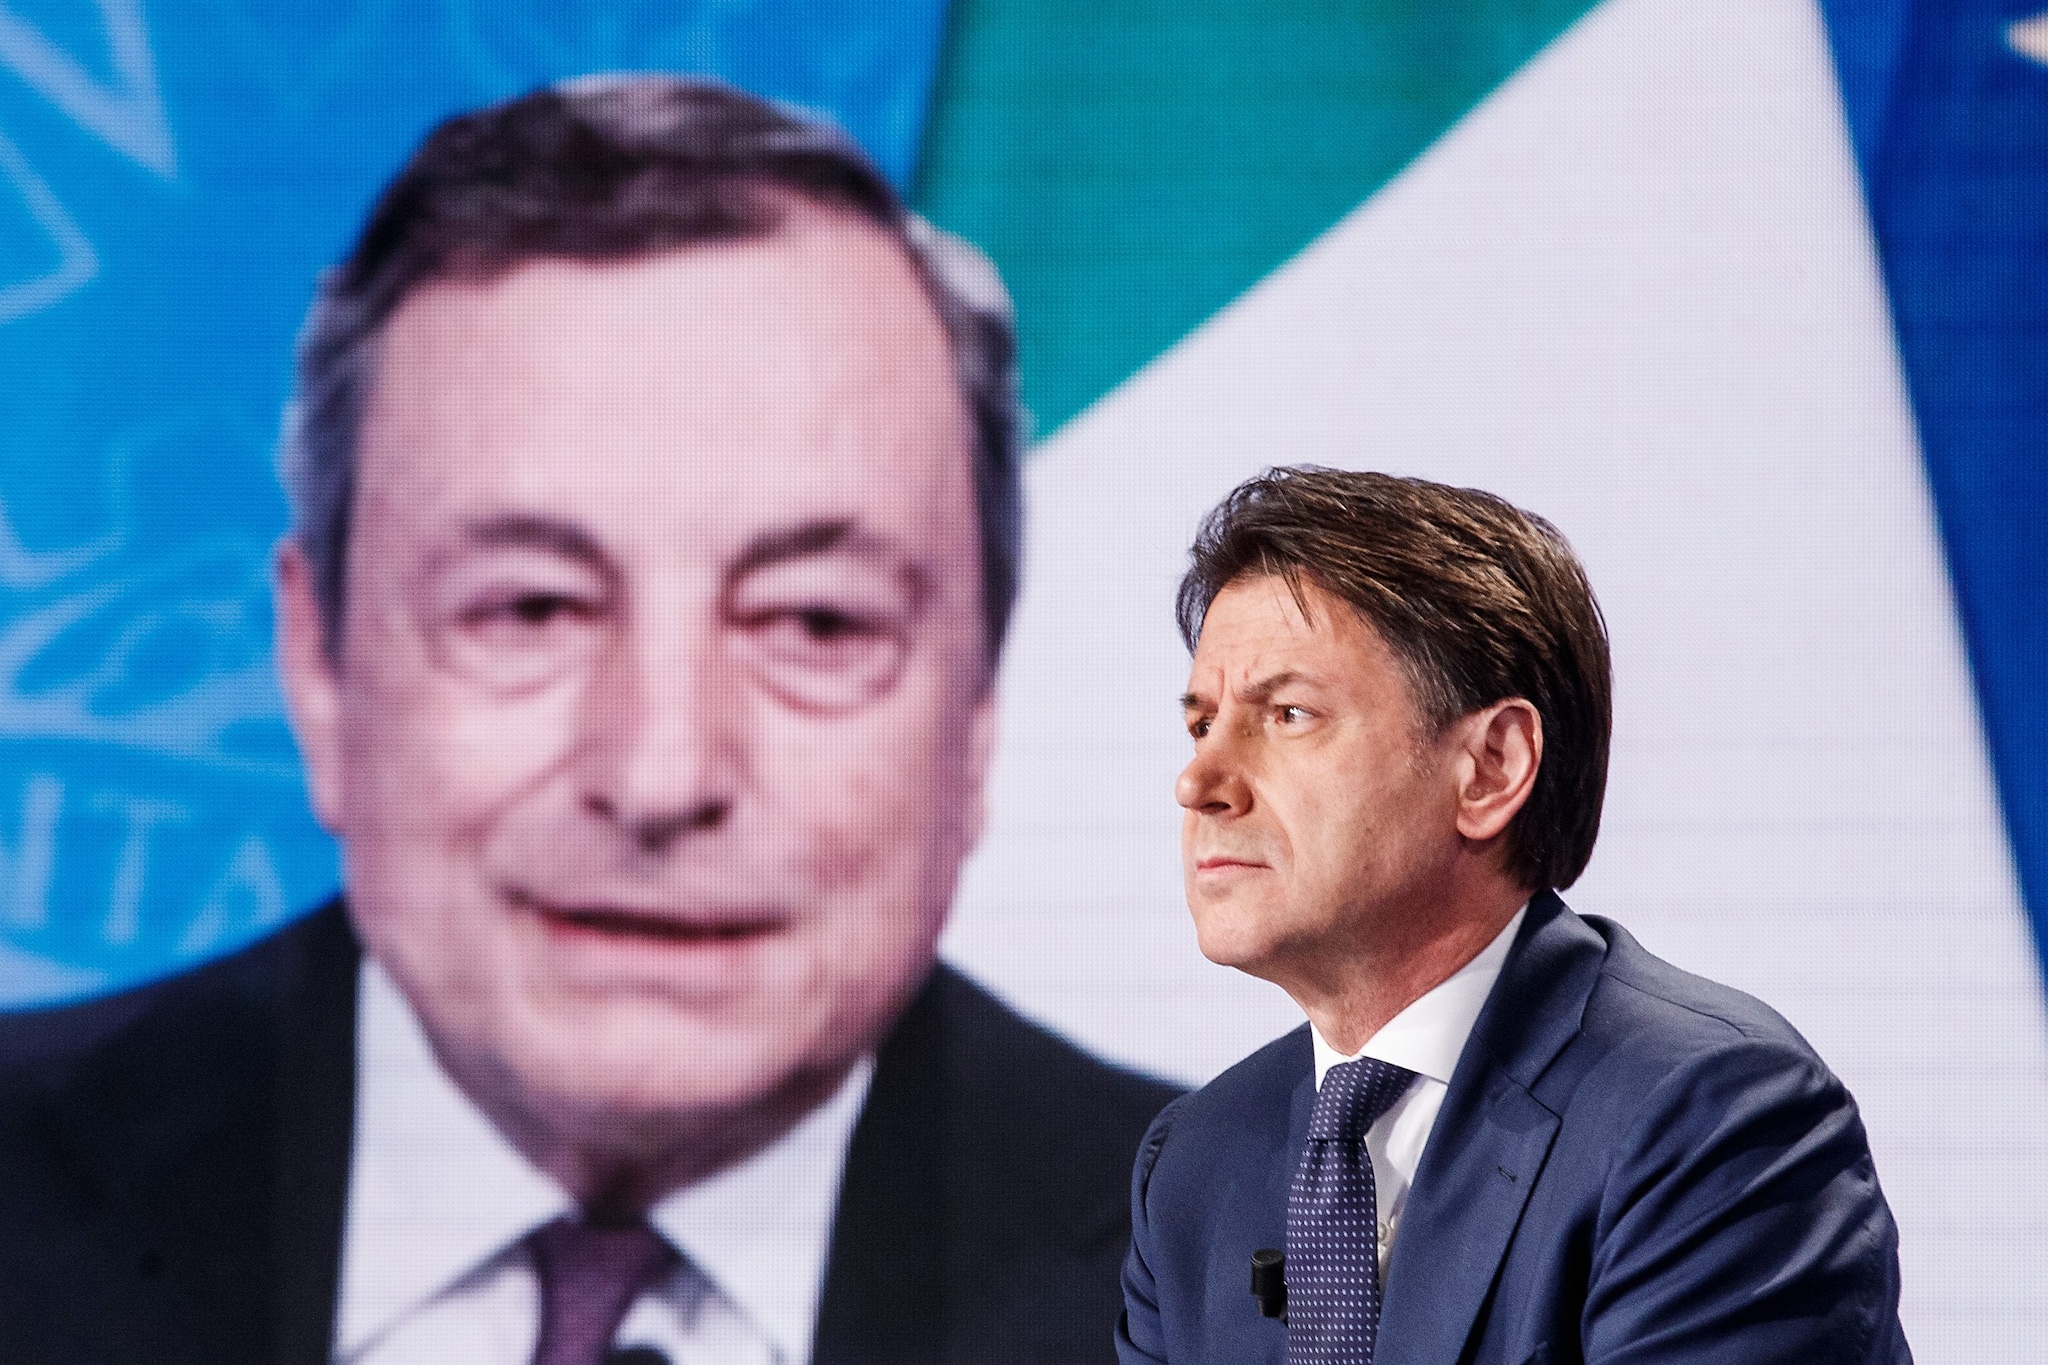 Superbonus 110%, è scontro nel governo. Draghi: "Siamo contrari". M5s: "Posizione irricevibile"